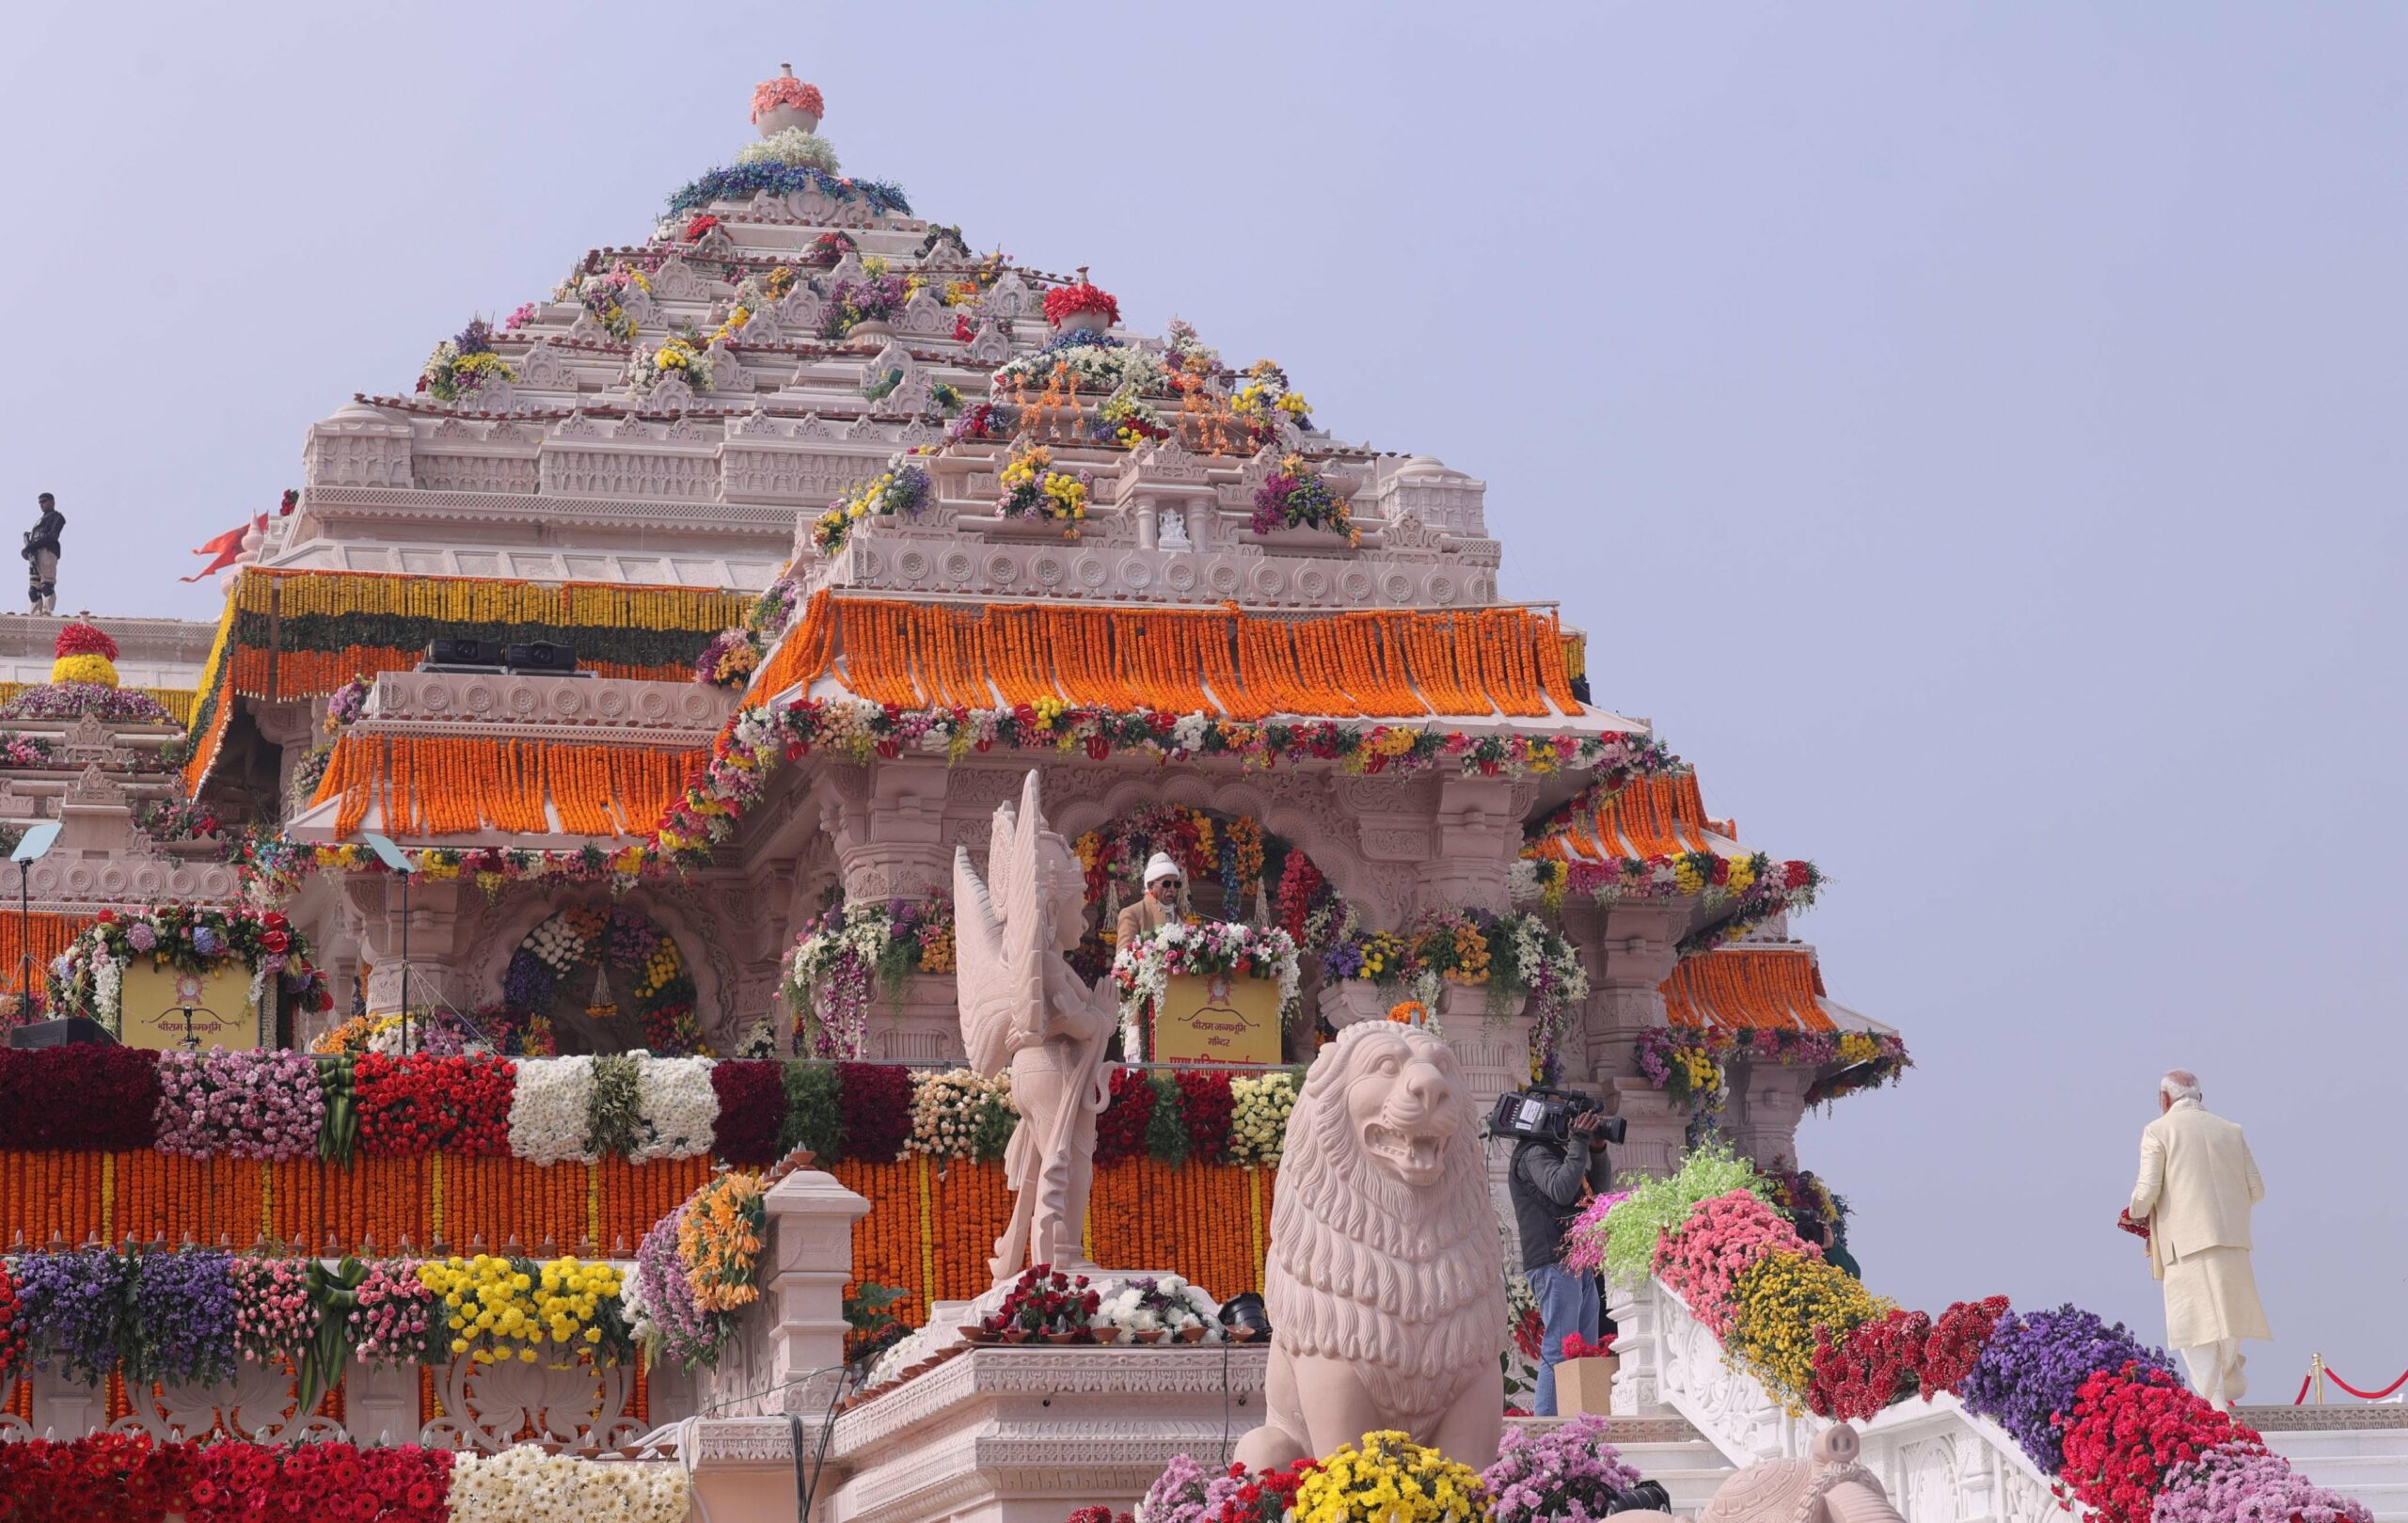 प्रधानमंत्री नरेंद्र मोदी ने शेयर की आज की तस्वारें जिसमें प्राणप्रतिष्ठा के लिए मंदिर को लाखों फूलों से सजाया जो बेहद ही सुंदर नजर आ रहा हैं।